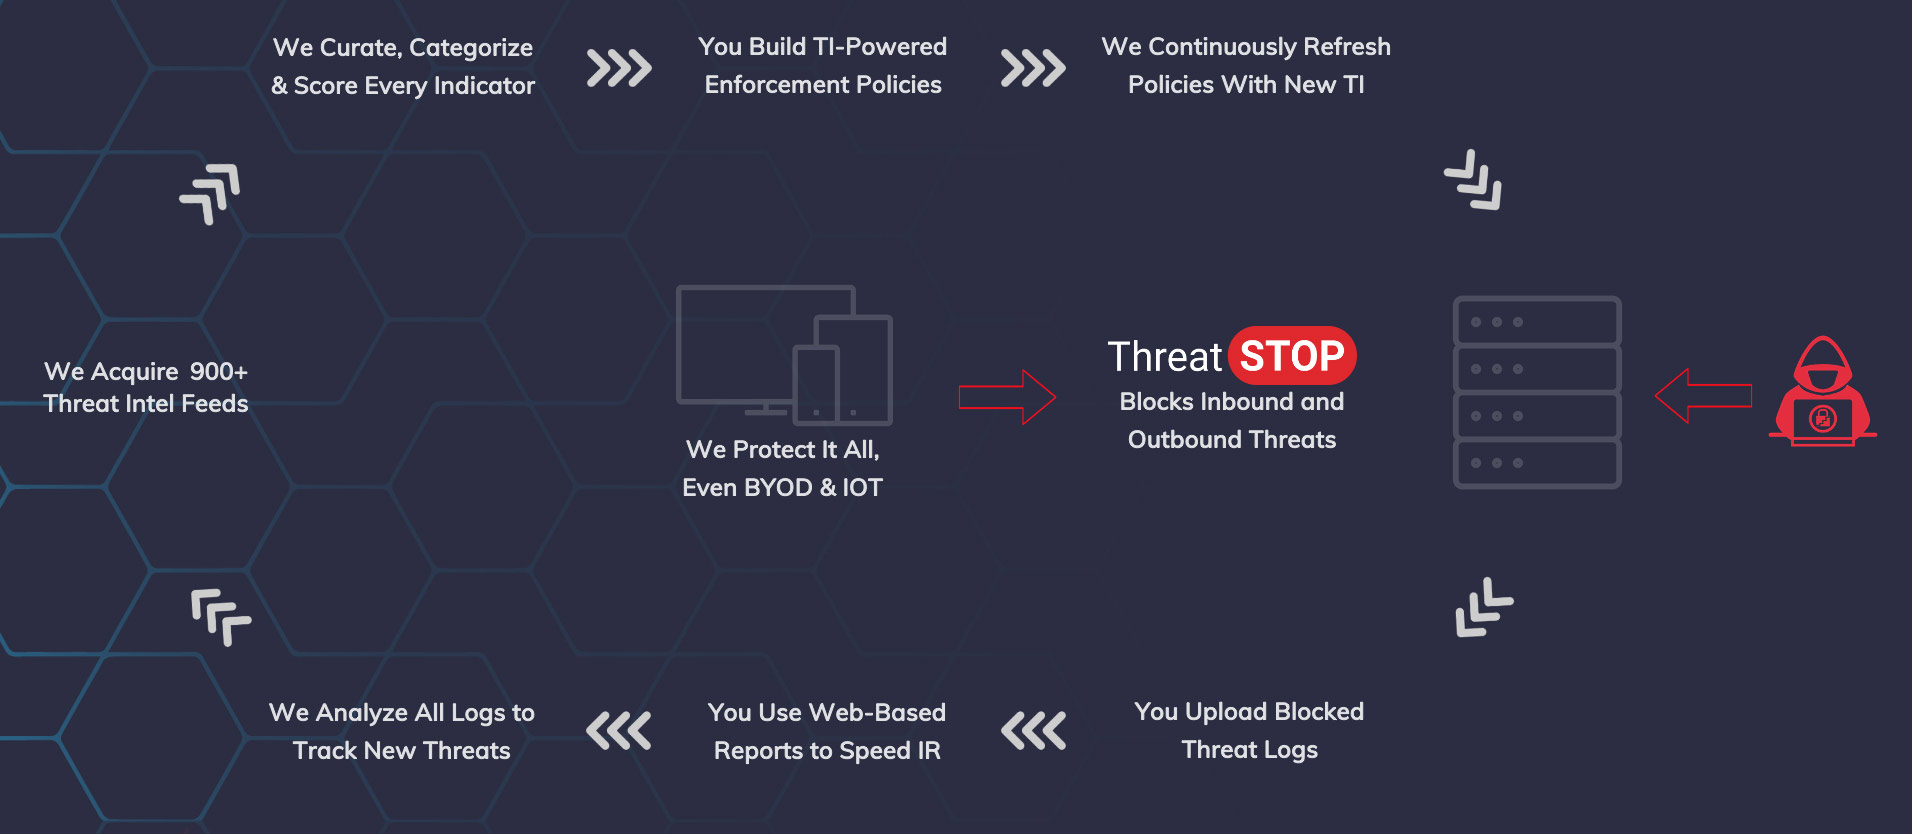 ThreatSTOP How It Works